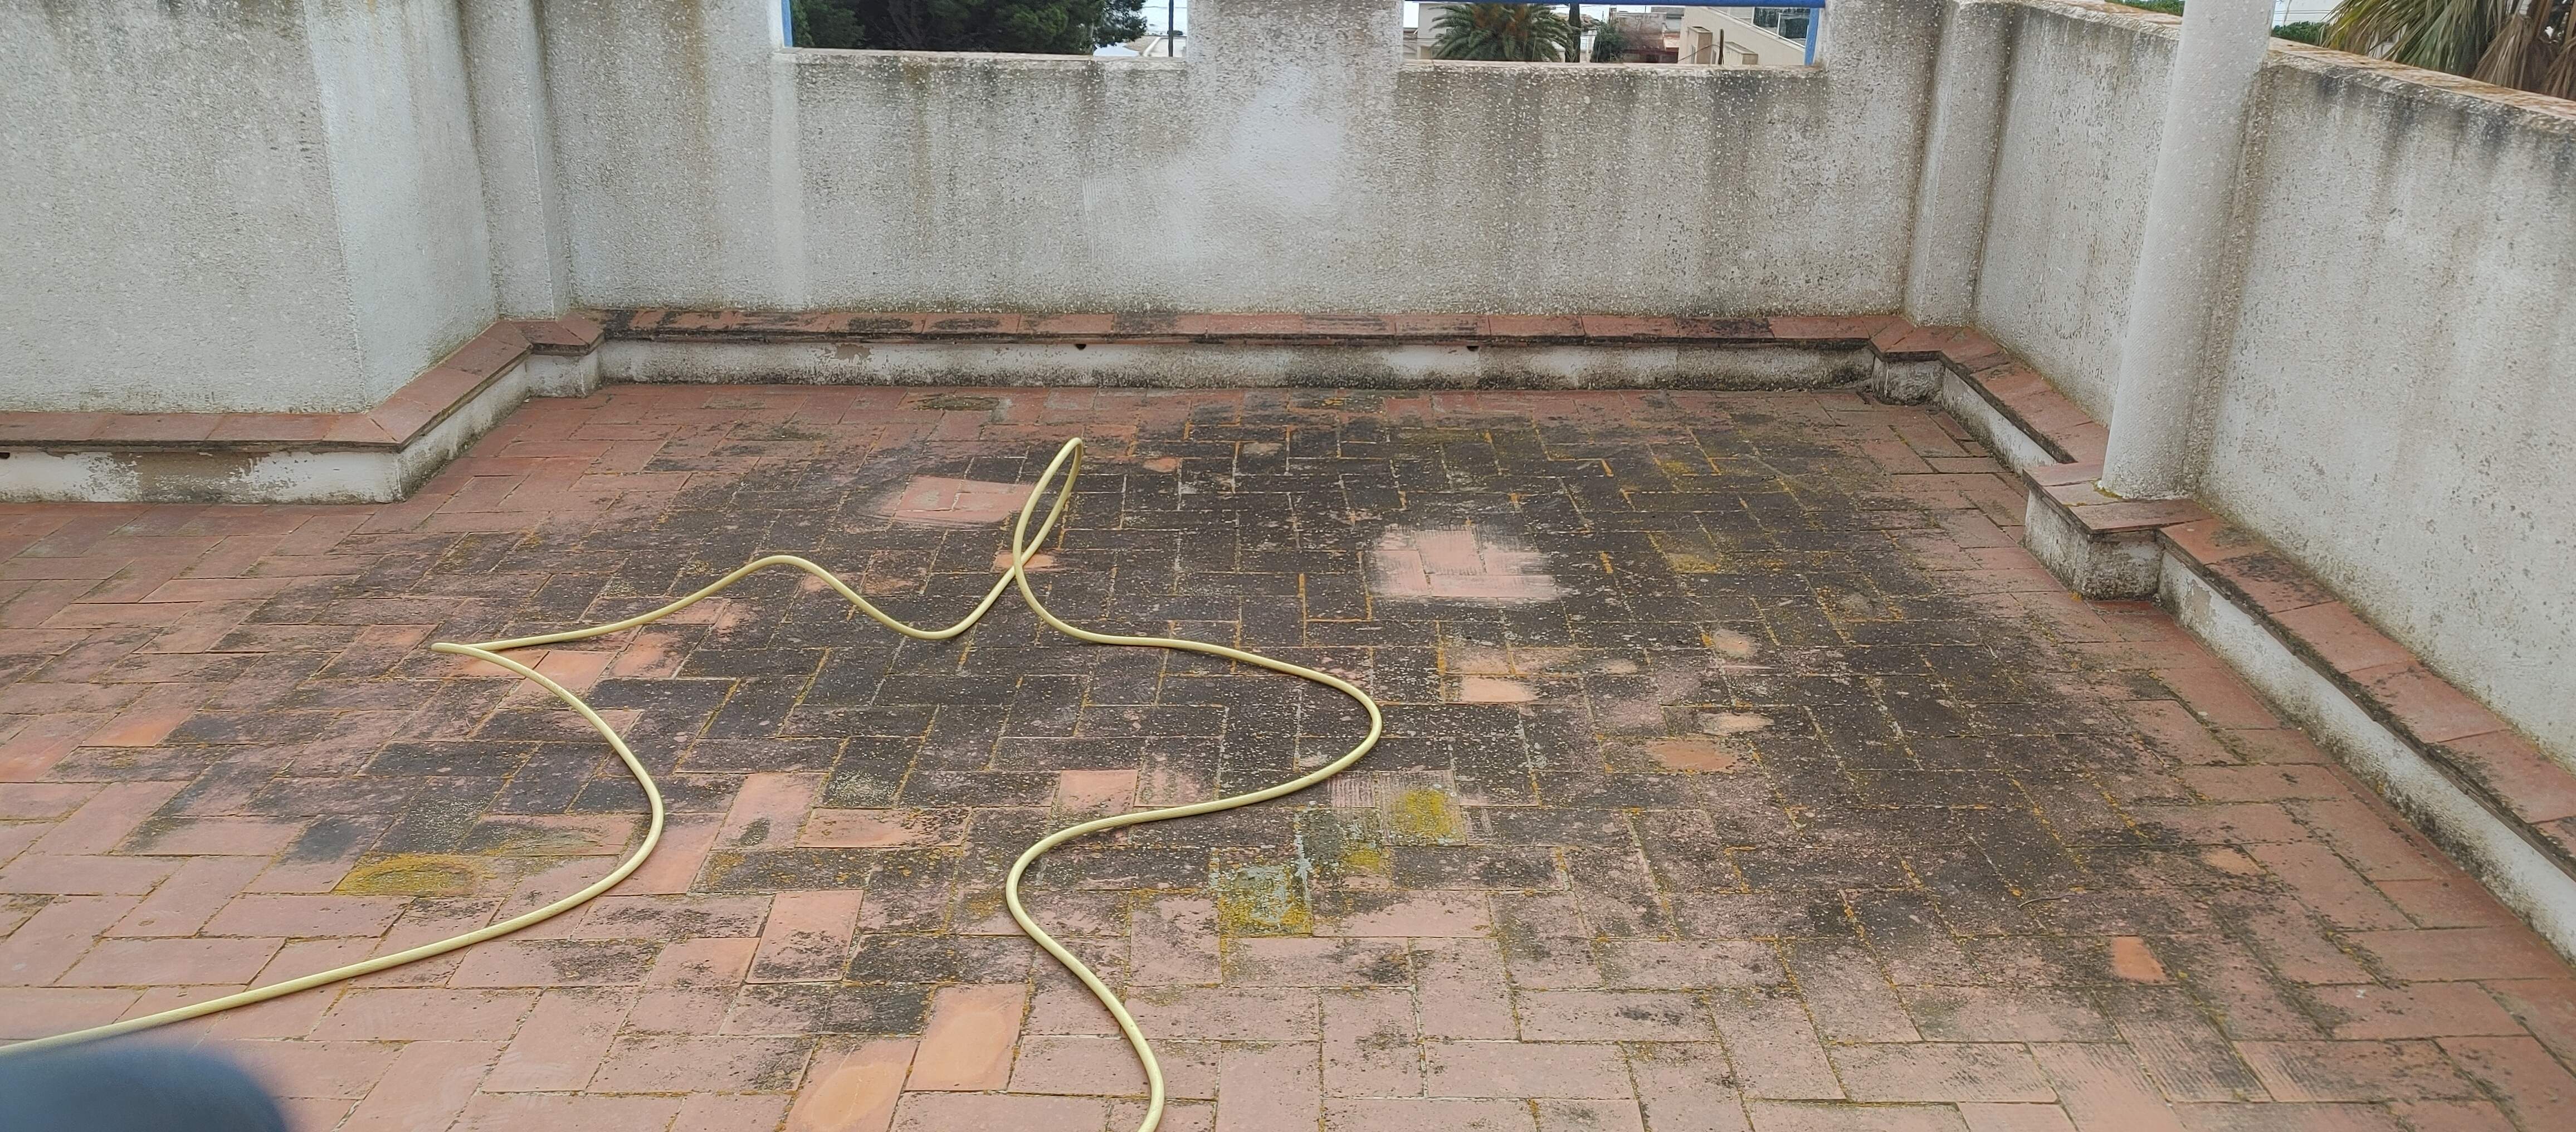 impermeabilizar terraza sin levantar el suelo